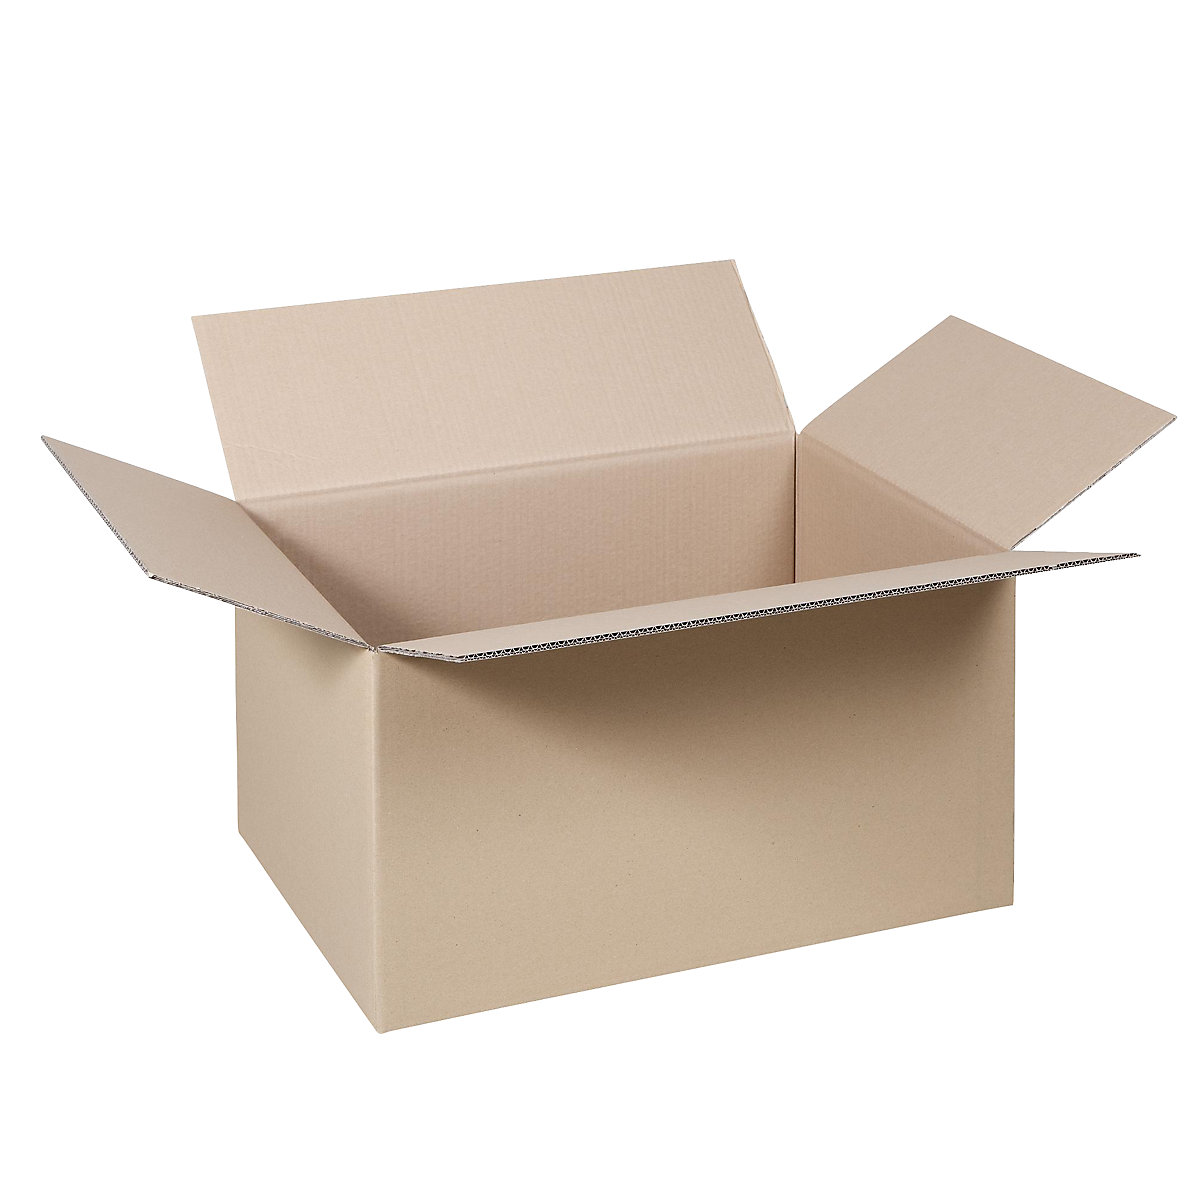 Cutie de carton pliantă, FEFCO 0201, cu 2 straturi de carton ondulat, dimensiuni interioare 400 x 325 x 273 mm, amb. 100 buc.-27